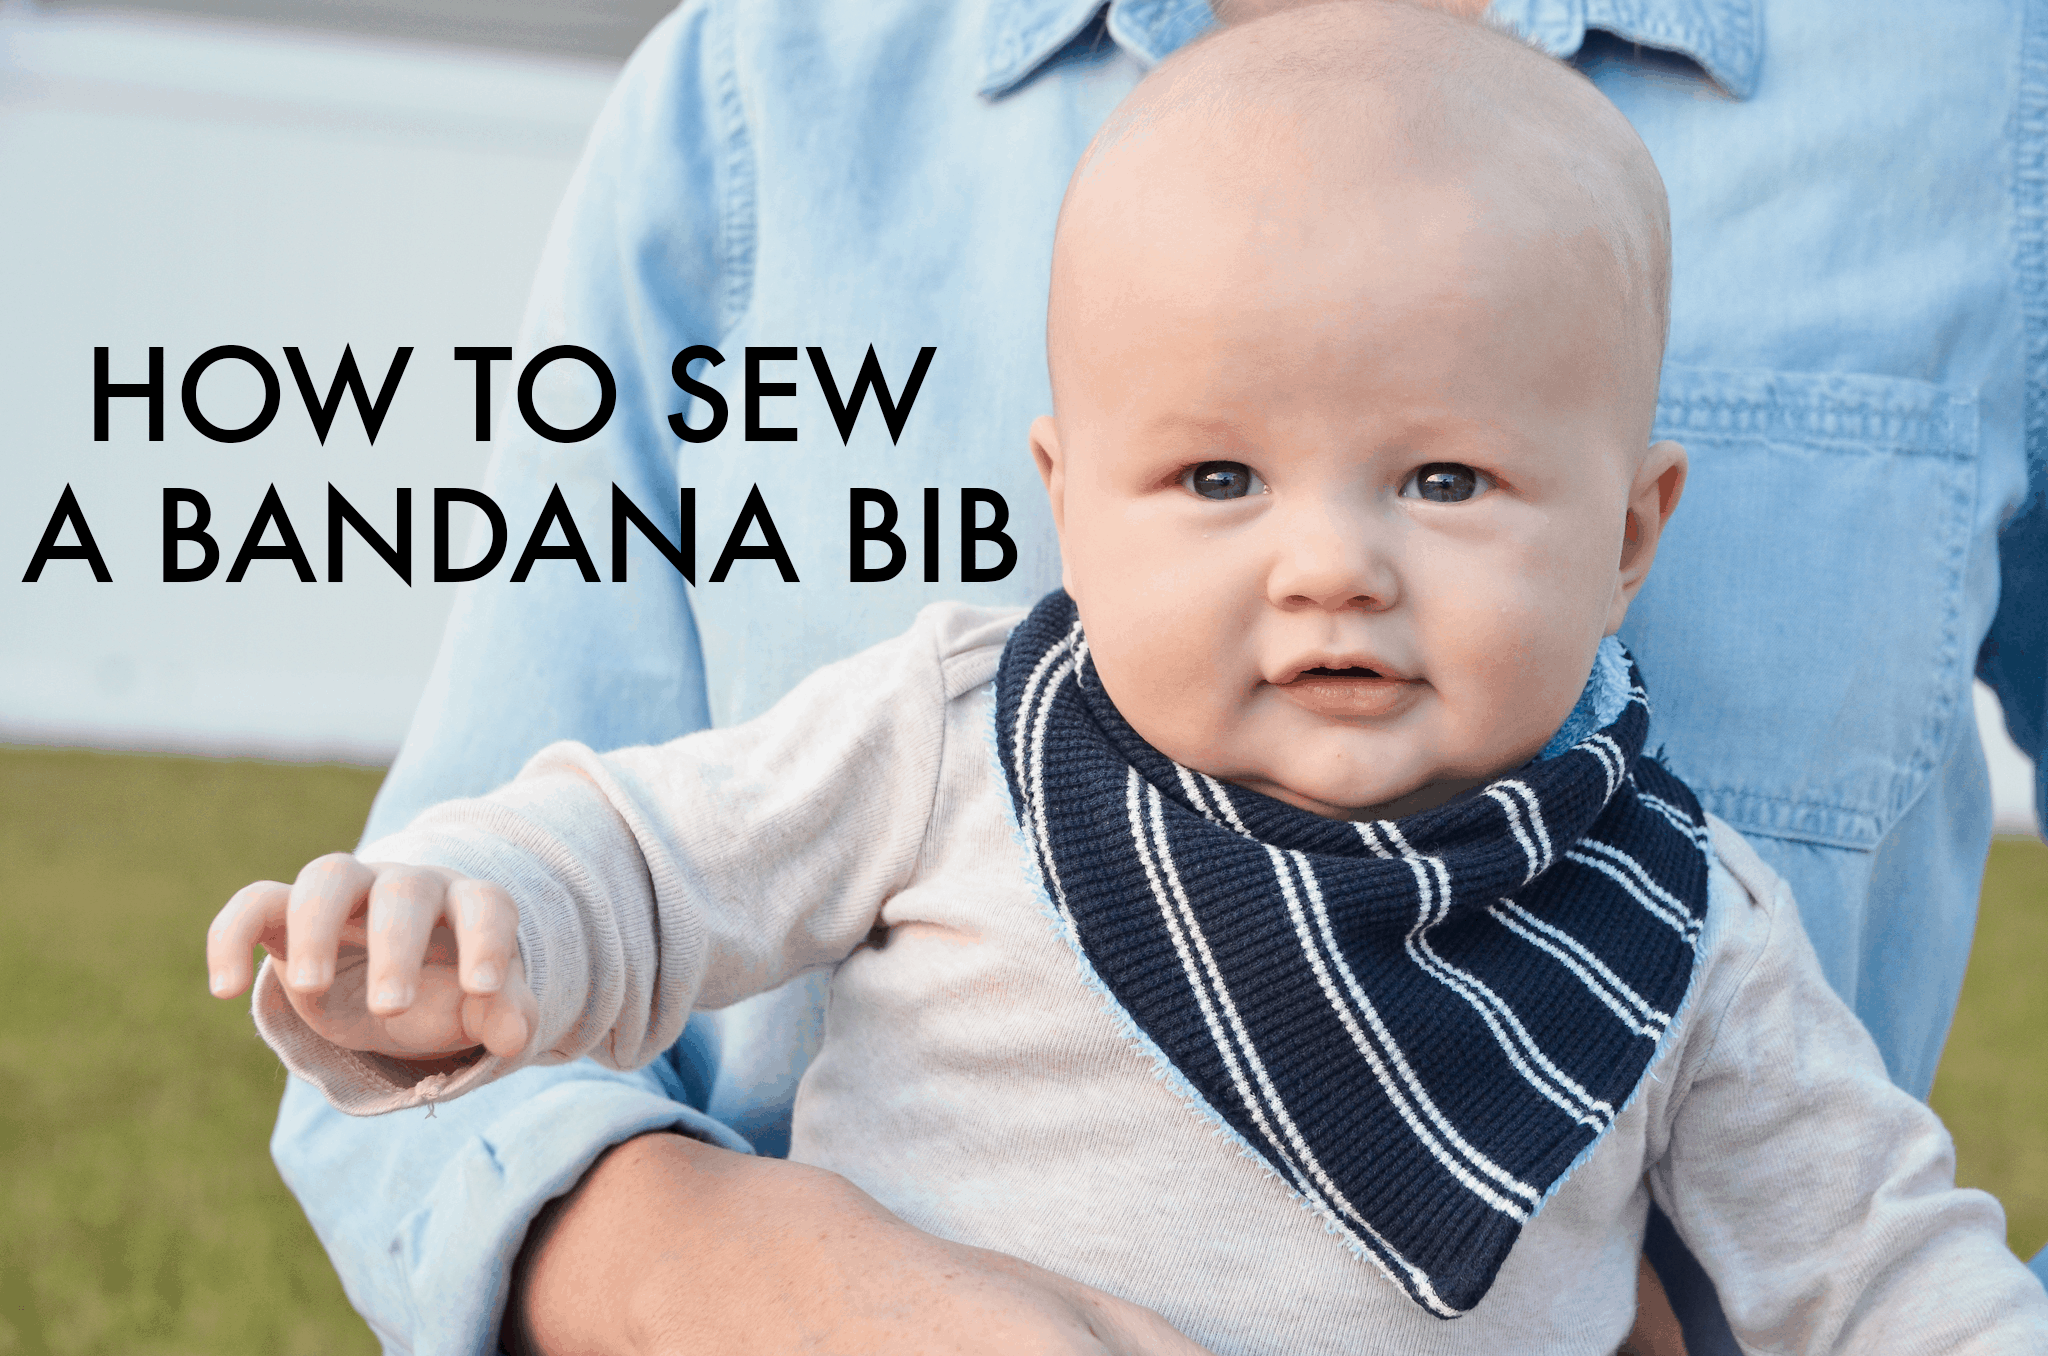 Sewn bandana bib from a t-shirt